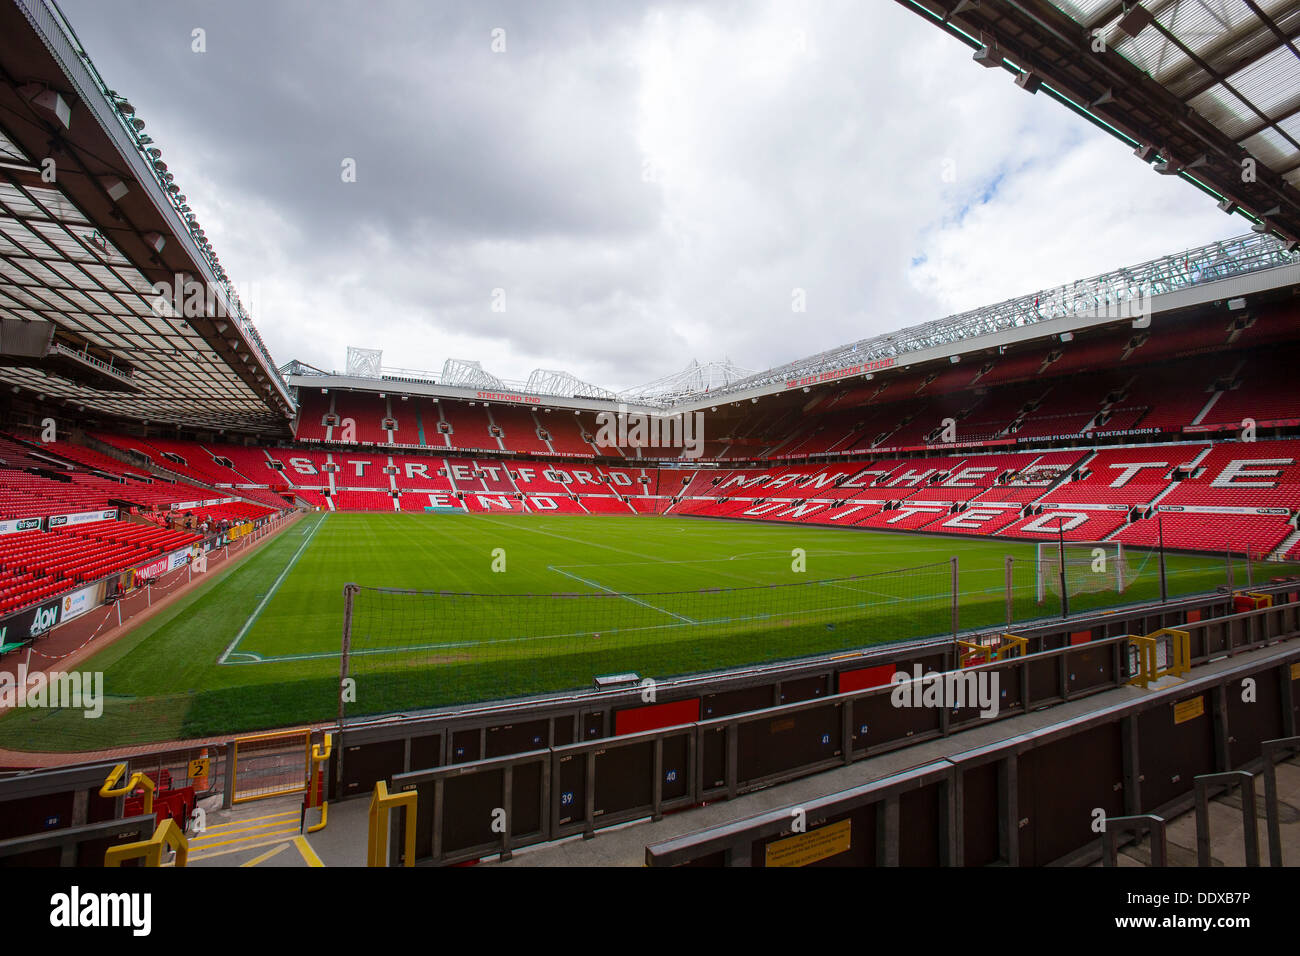 Le stade Old Trafford, Manchester United a pris du terrain de football de la mobilité stand Banque D'Images